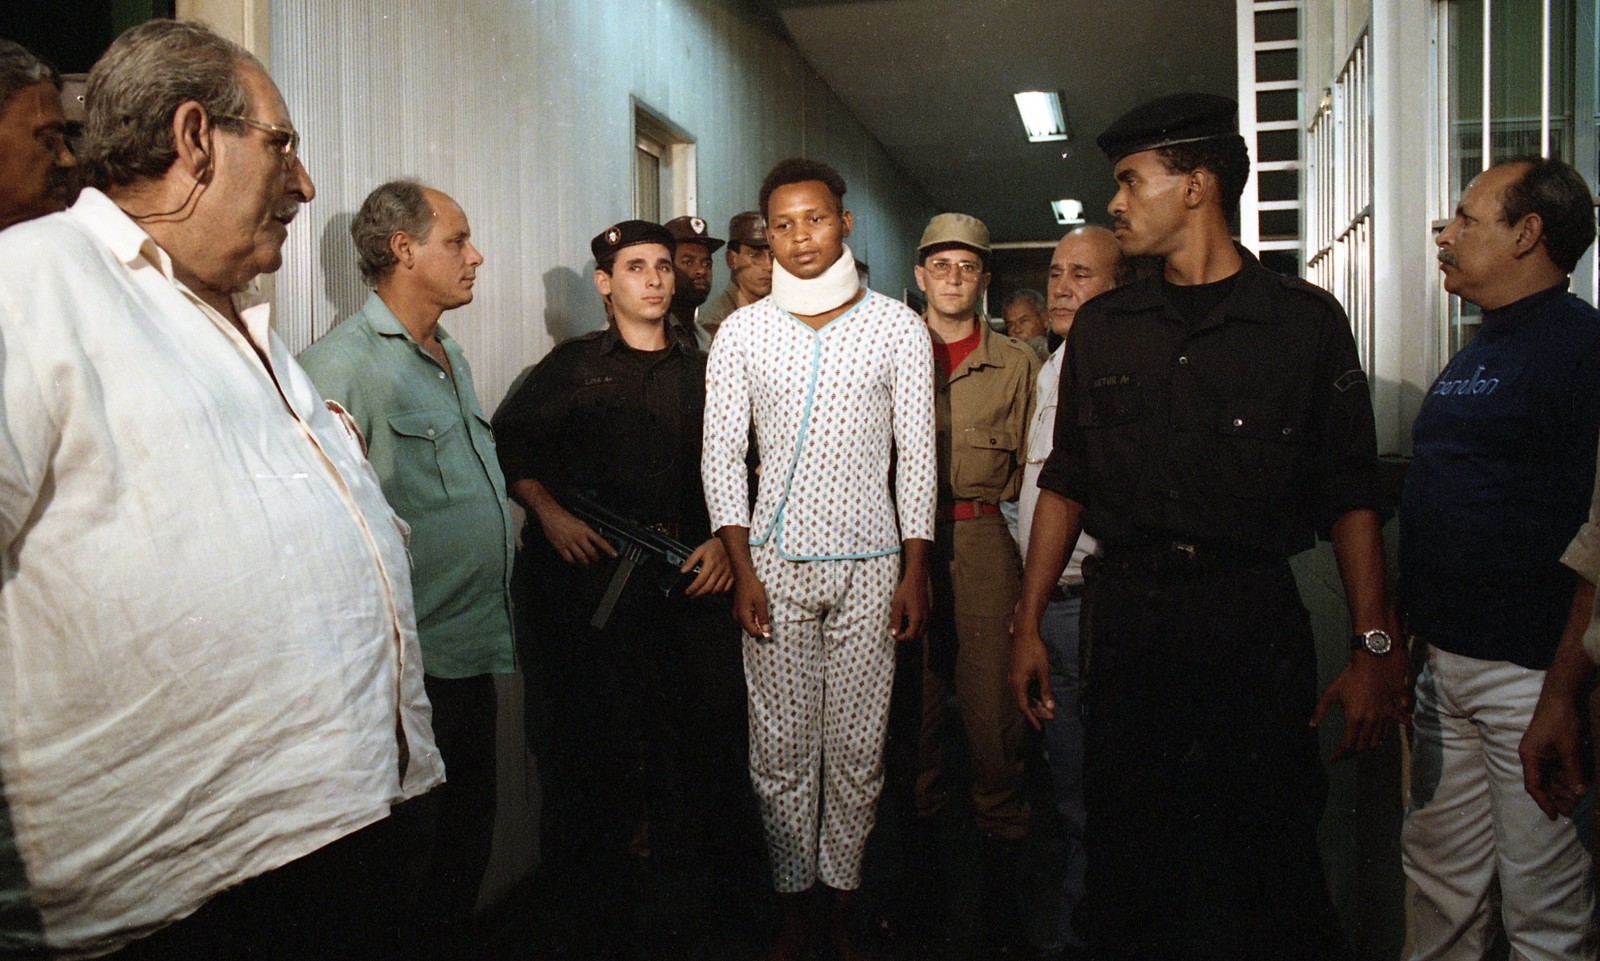 Testemunha-chave da chacina, Wagner dos Santos deixa o hospital Souza Aguiar e é levado para a sala de reconhecimento oficial da Polícia Civil, em 29 de julho de 1993 — Foto: Jorge Peter / Agência O Globo